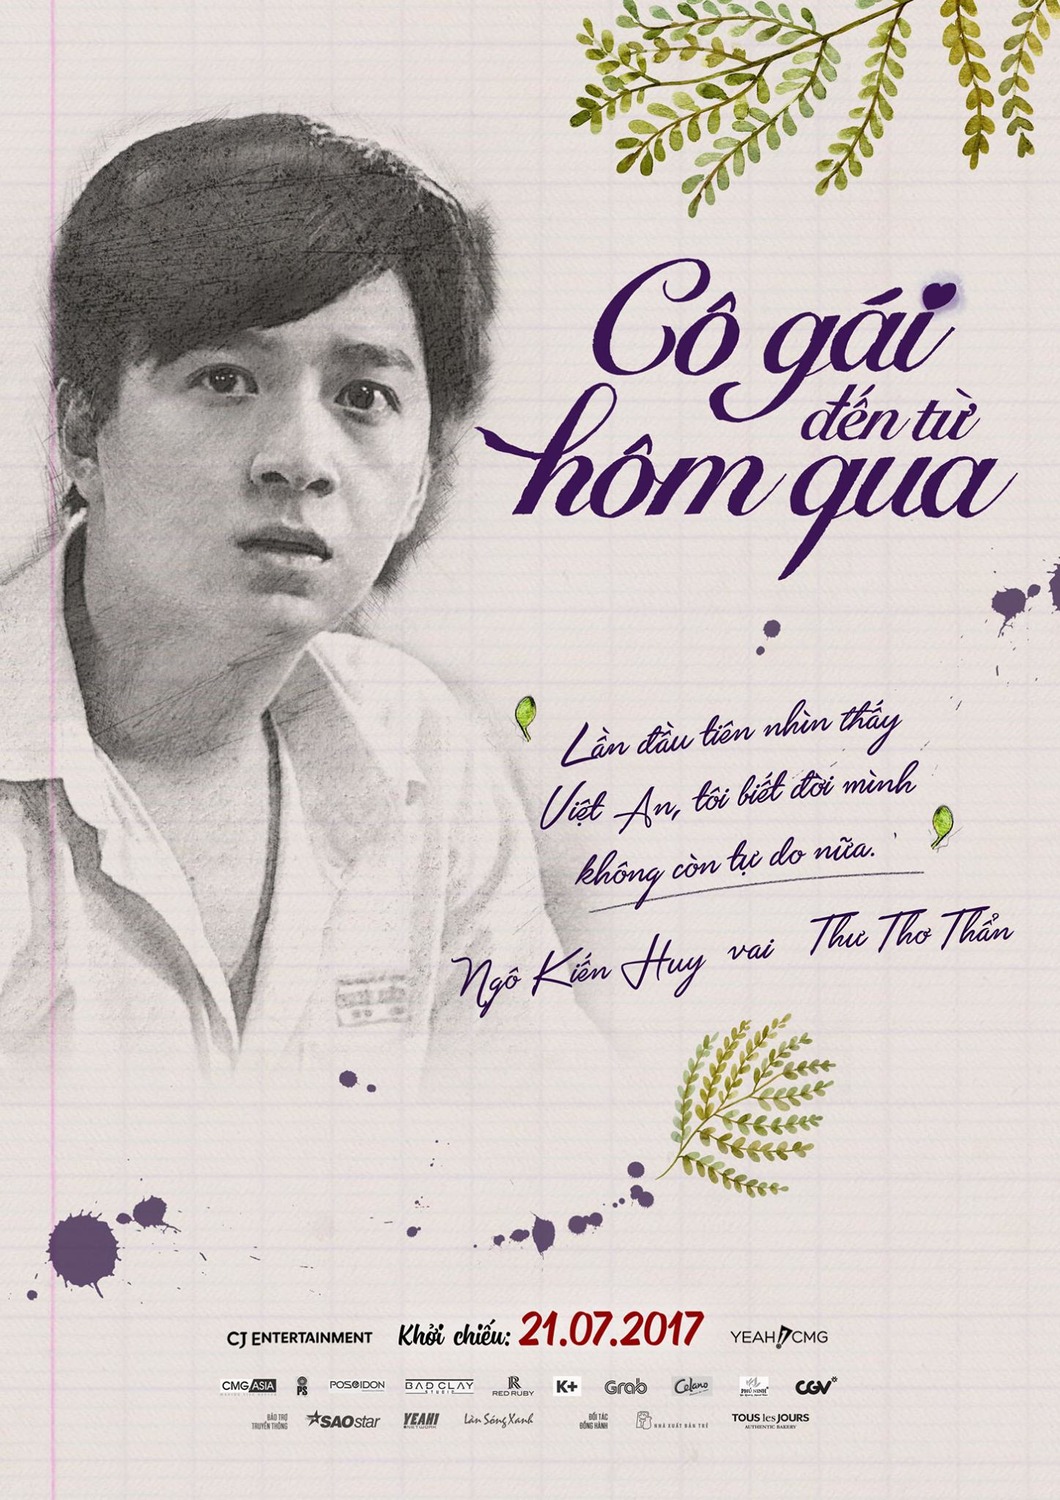 Extra Large Movie Poster Image for Co gai den tu hom qua (#11 of 14)